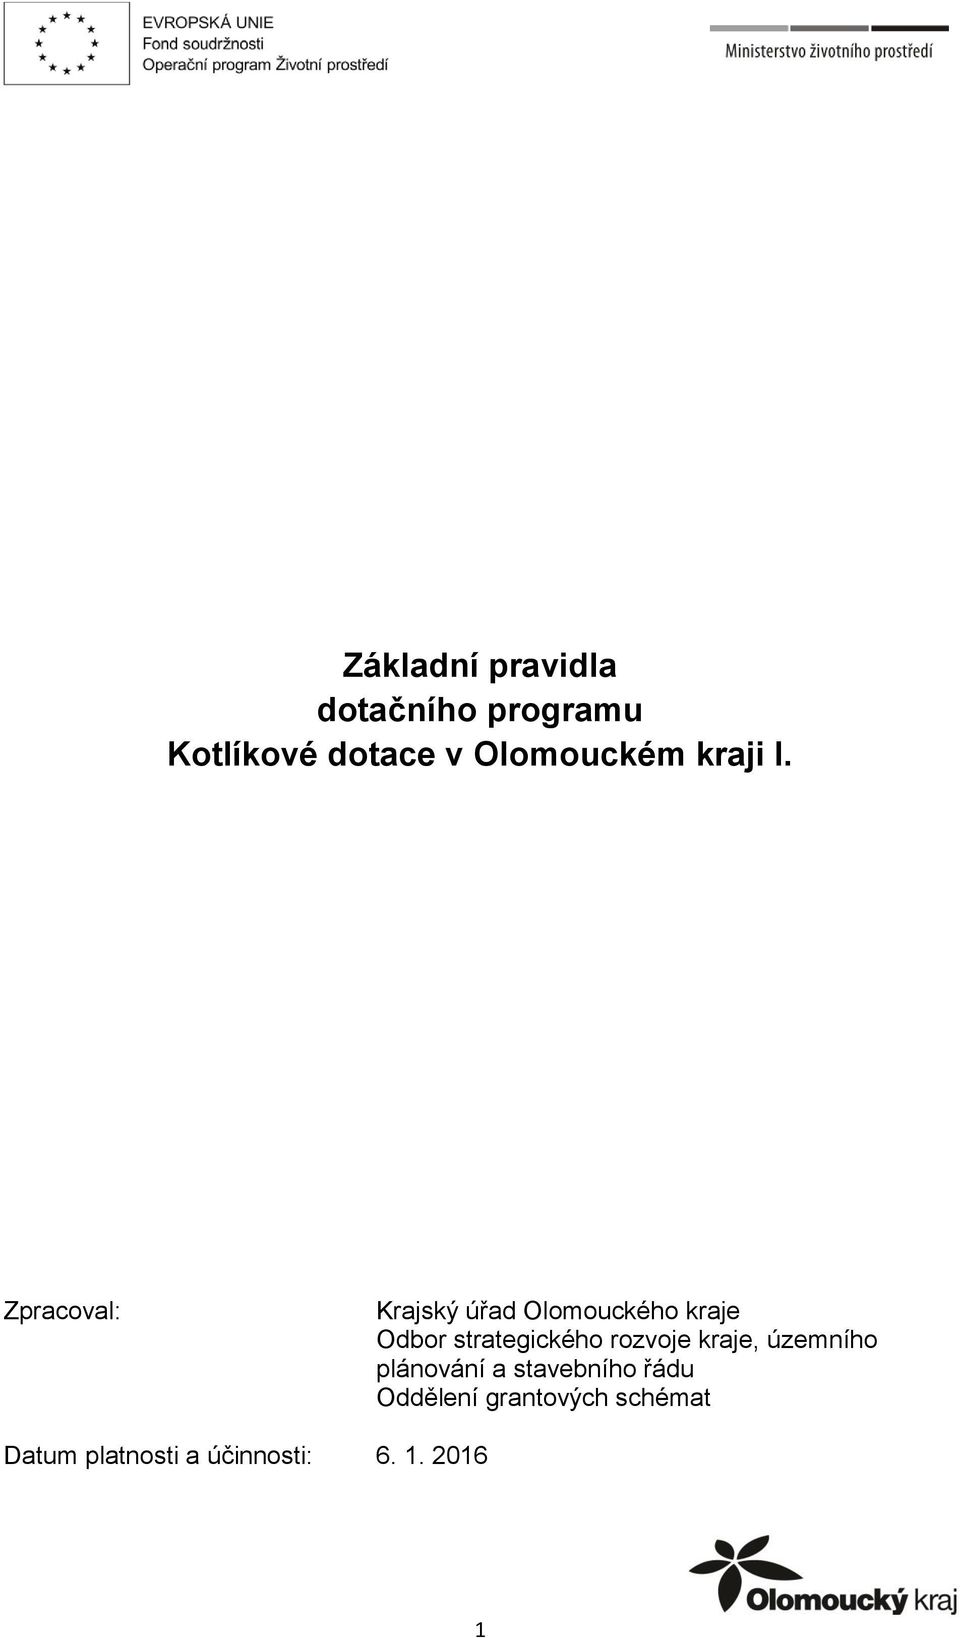 Základní pravidla dotačního programu Kotlíkové dotace v Olomouckém kraji I.  - PDF Stažení zdarma